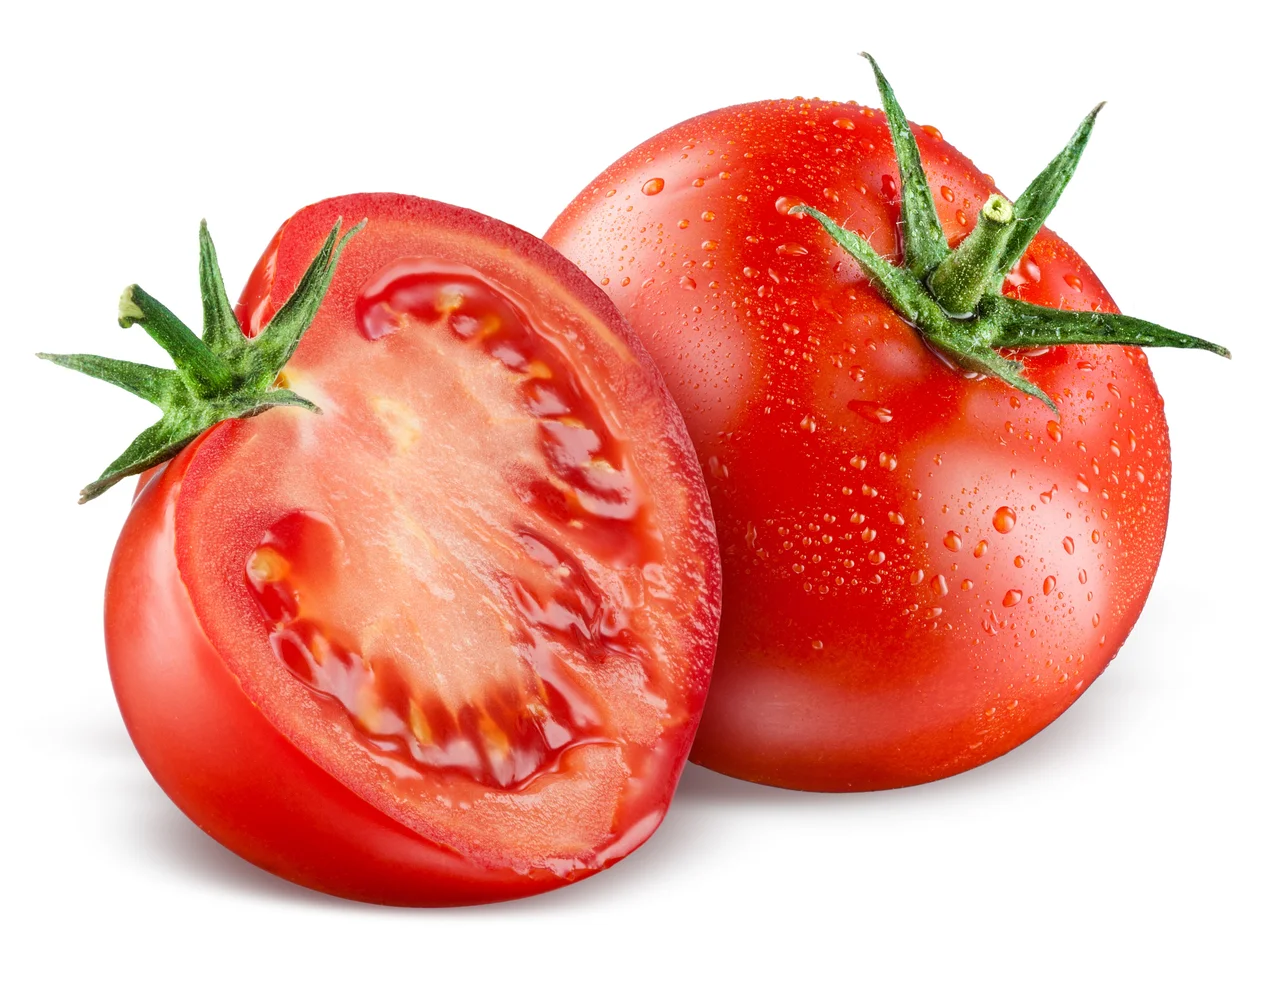 Jak w prosty sposób obrać pomidora ze skóry?